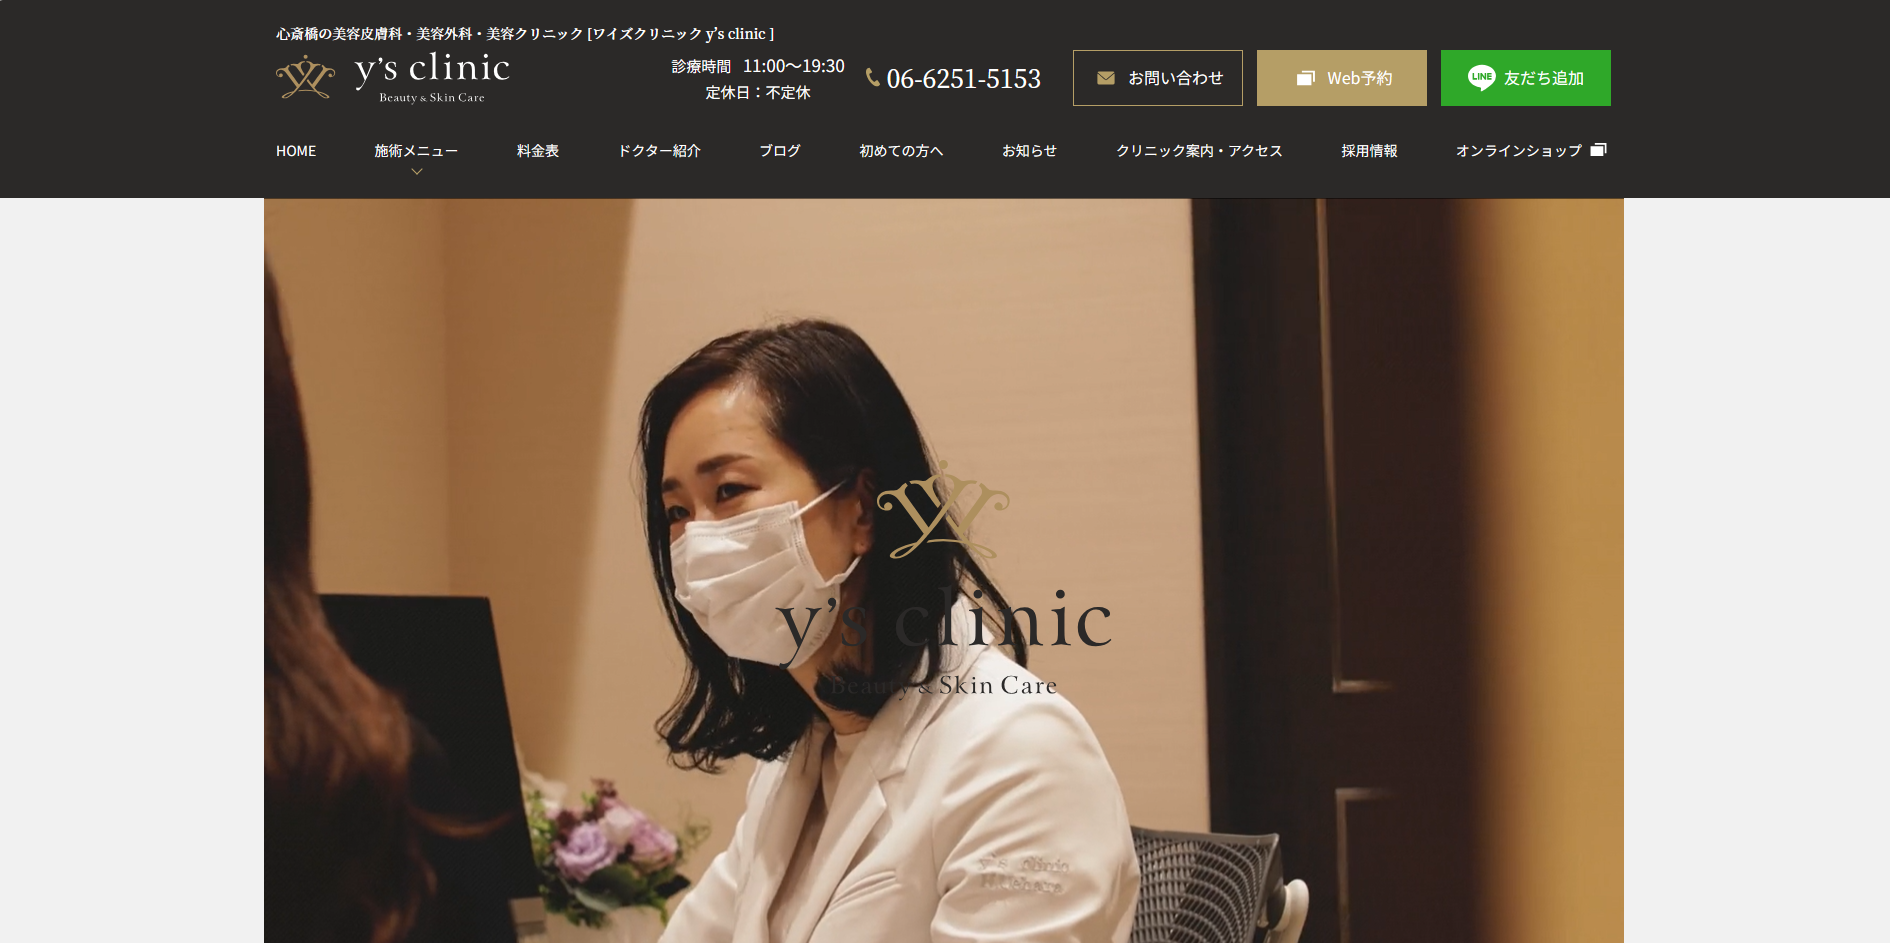 大阪府で評判の鼻整形におすすめのクリニック 上手い 名医 ランキング ワイズクリニック